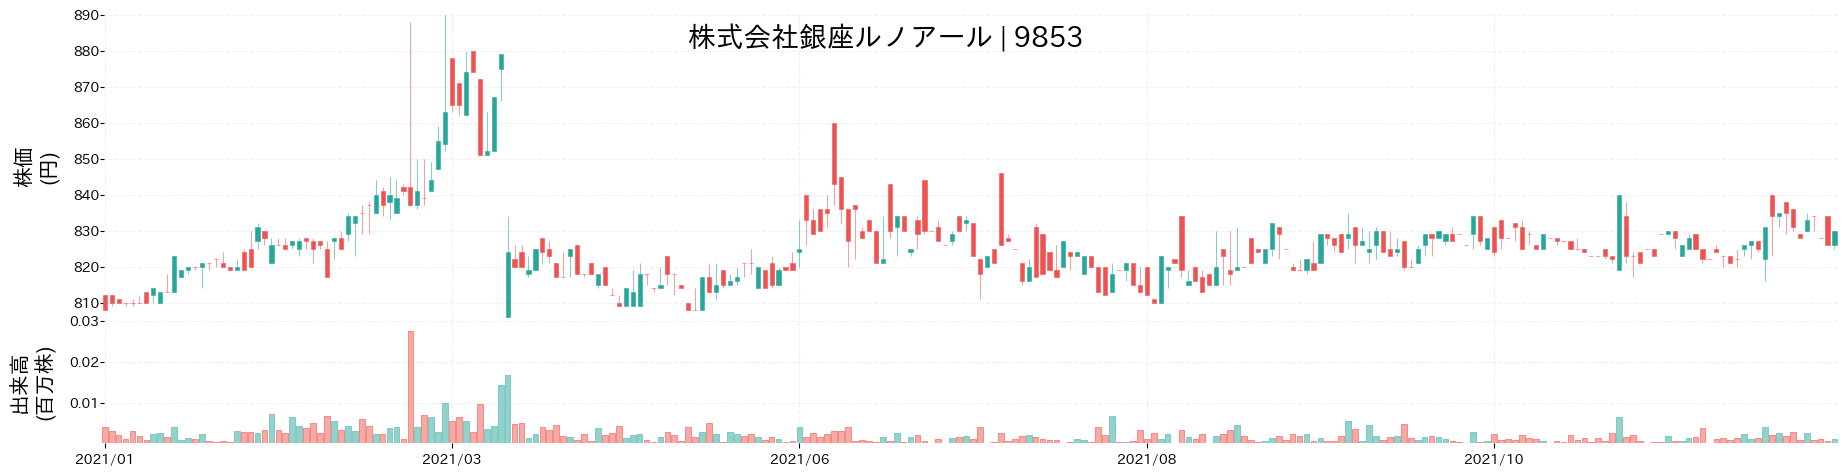 銀座ルノアールの株価推移(2021)